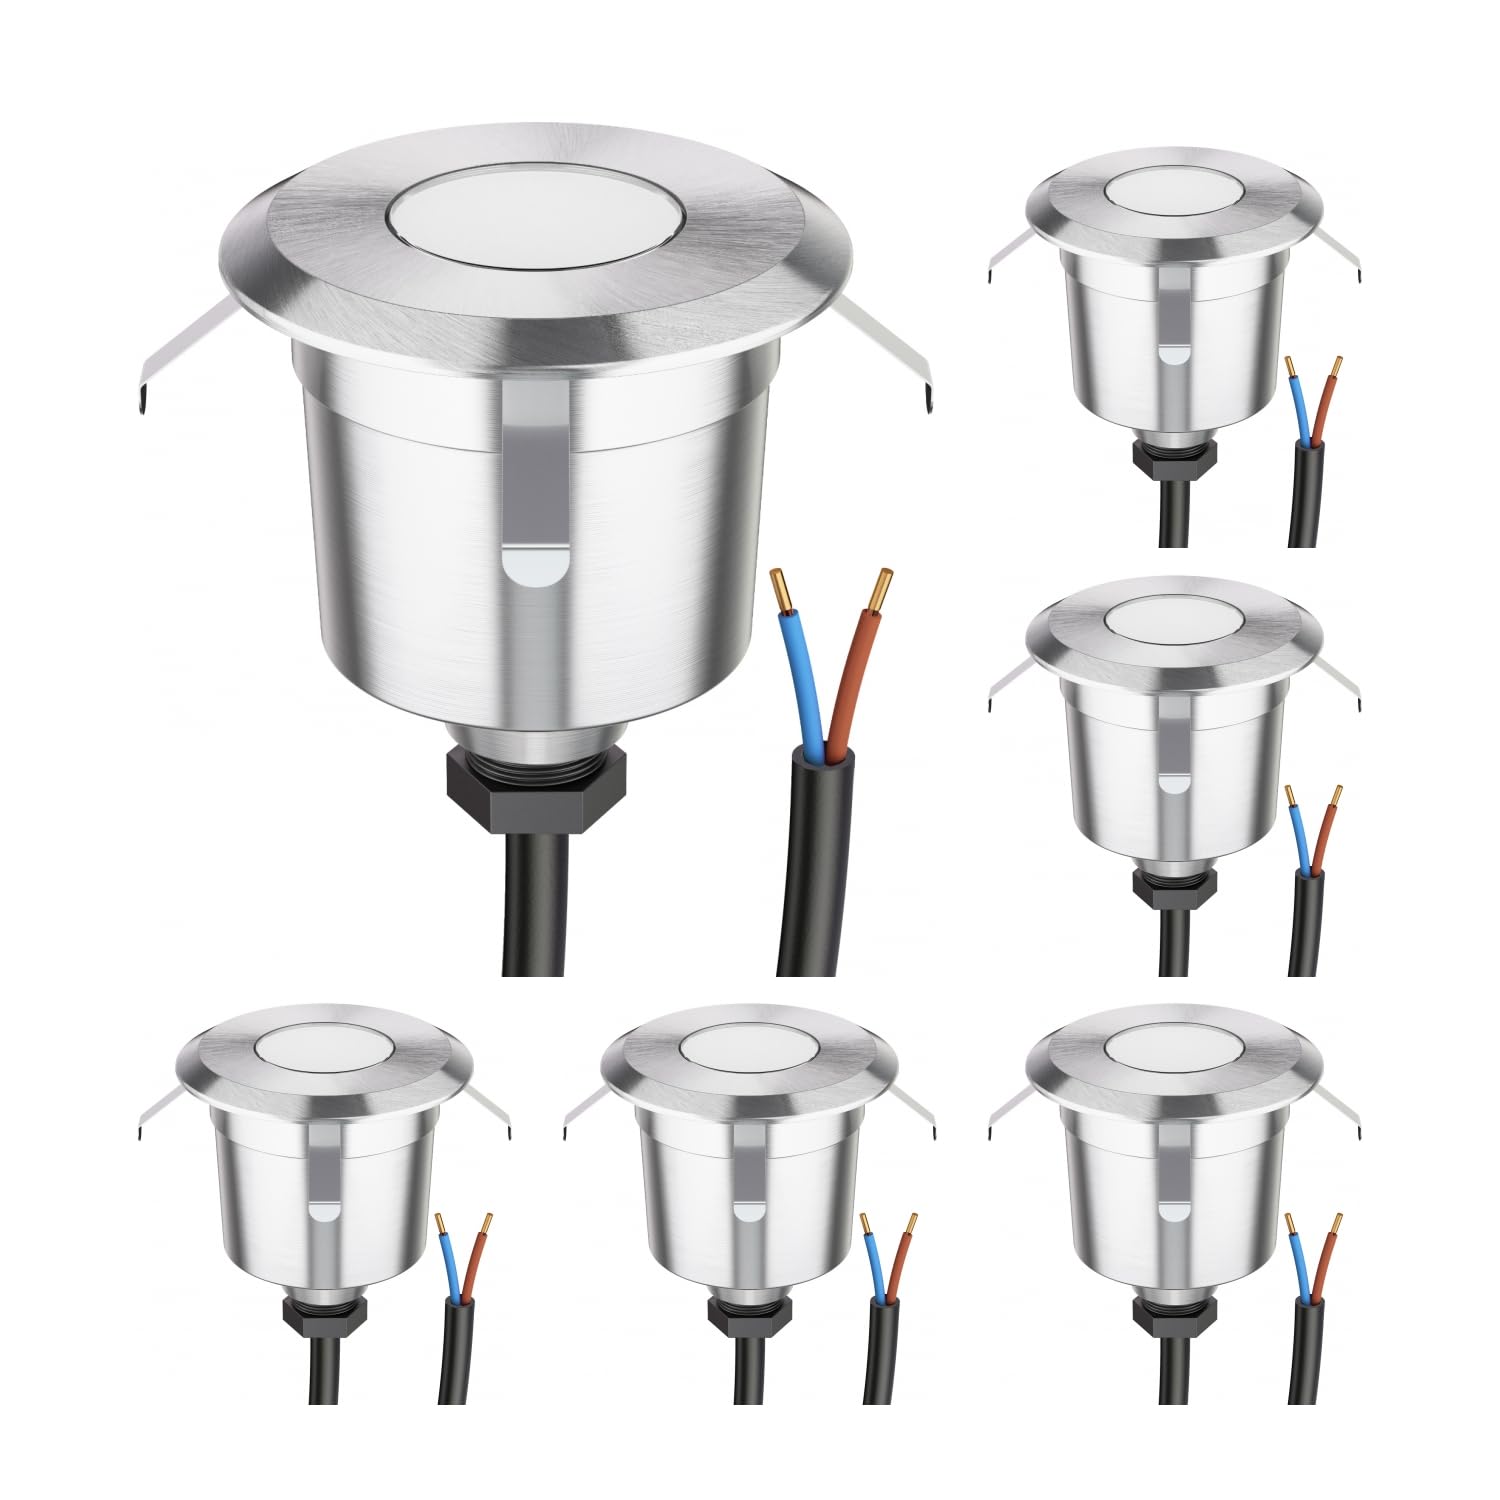 ledscom.de 6 Stück LED Bodeneinbauleuchte AGENA für außen, IP65, edelstahl, rund, 60mm Ø, kaltweiß